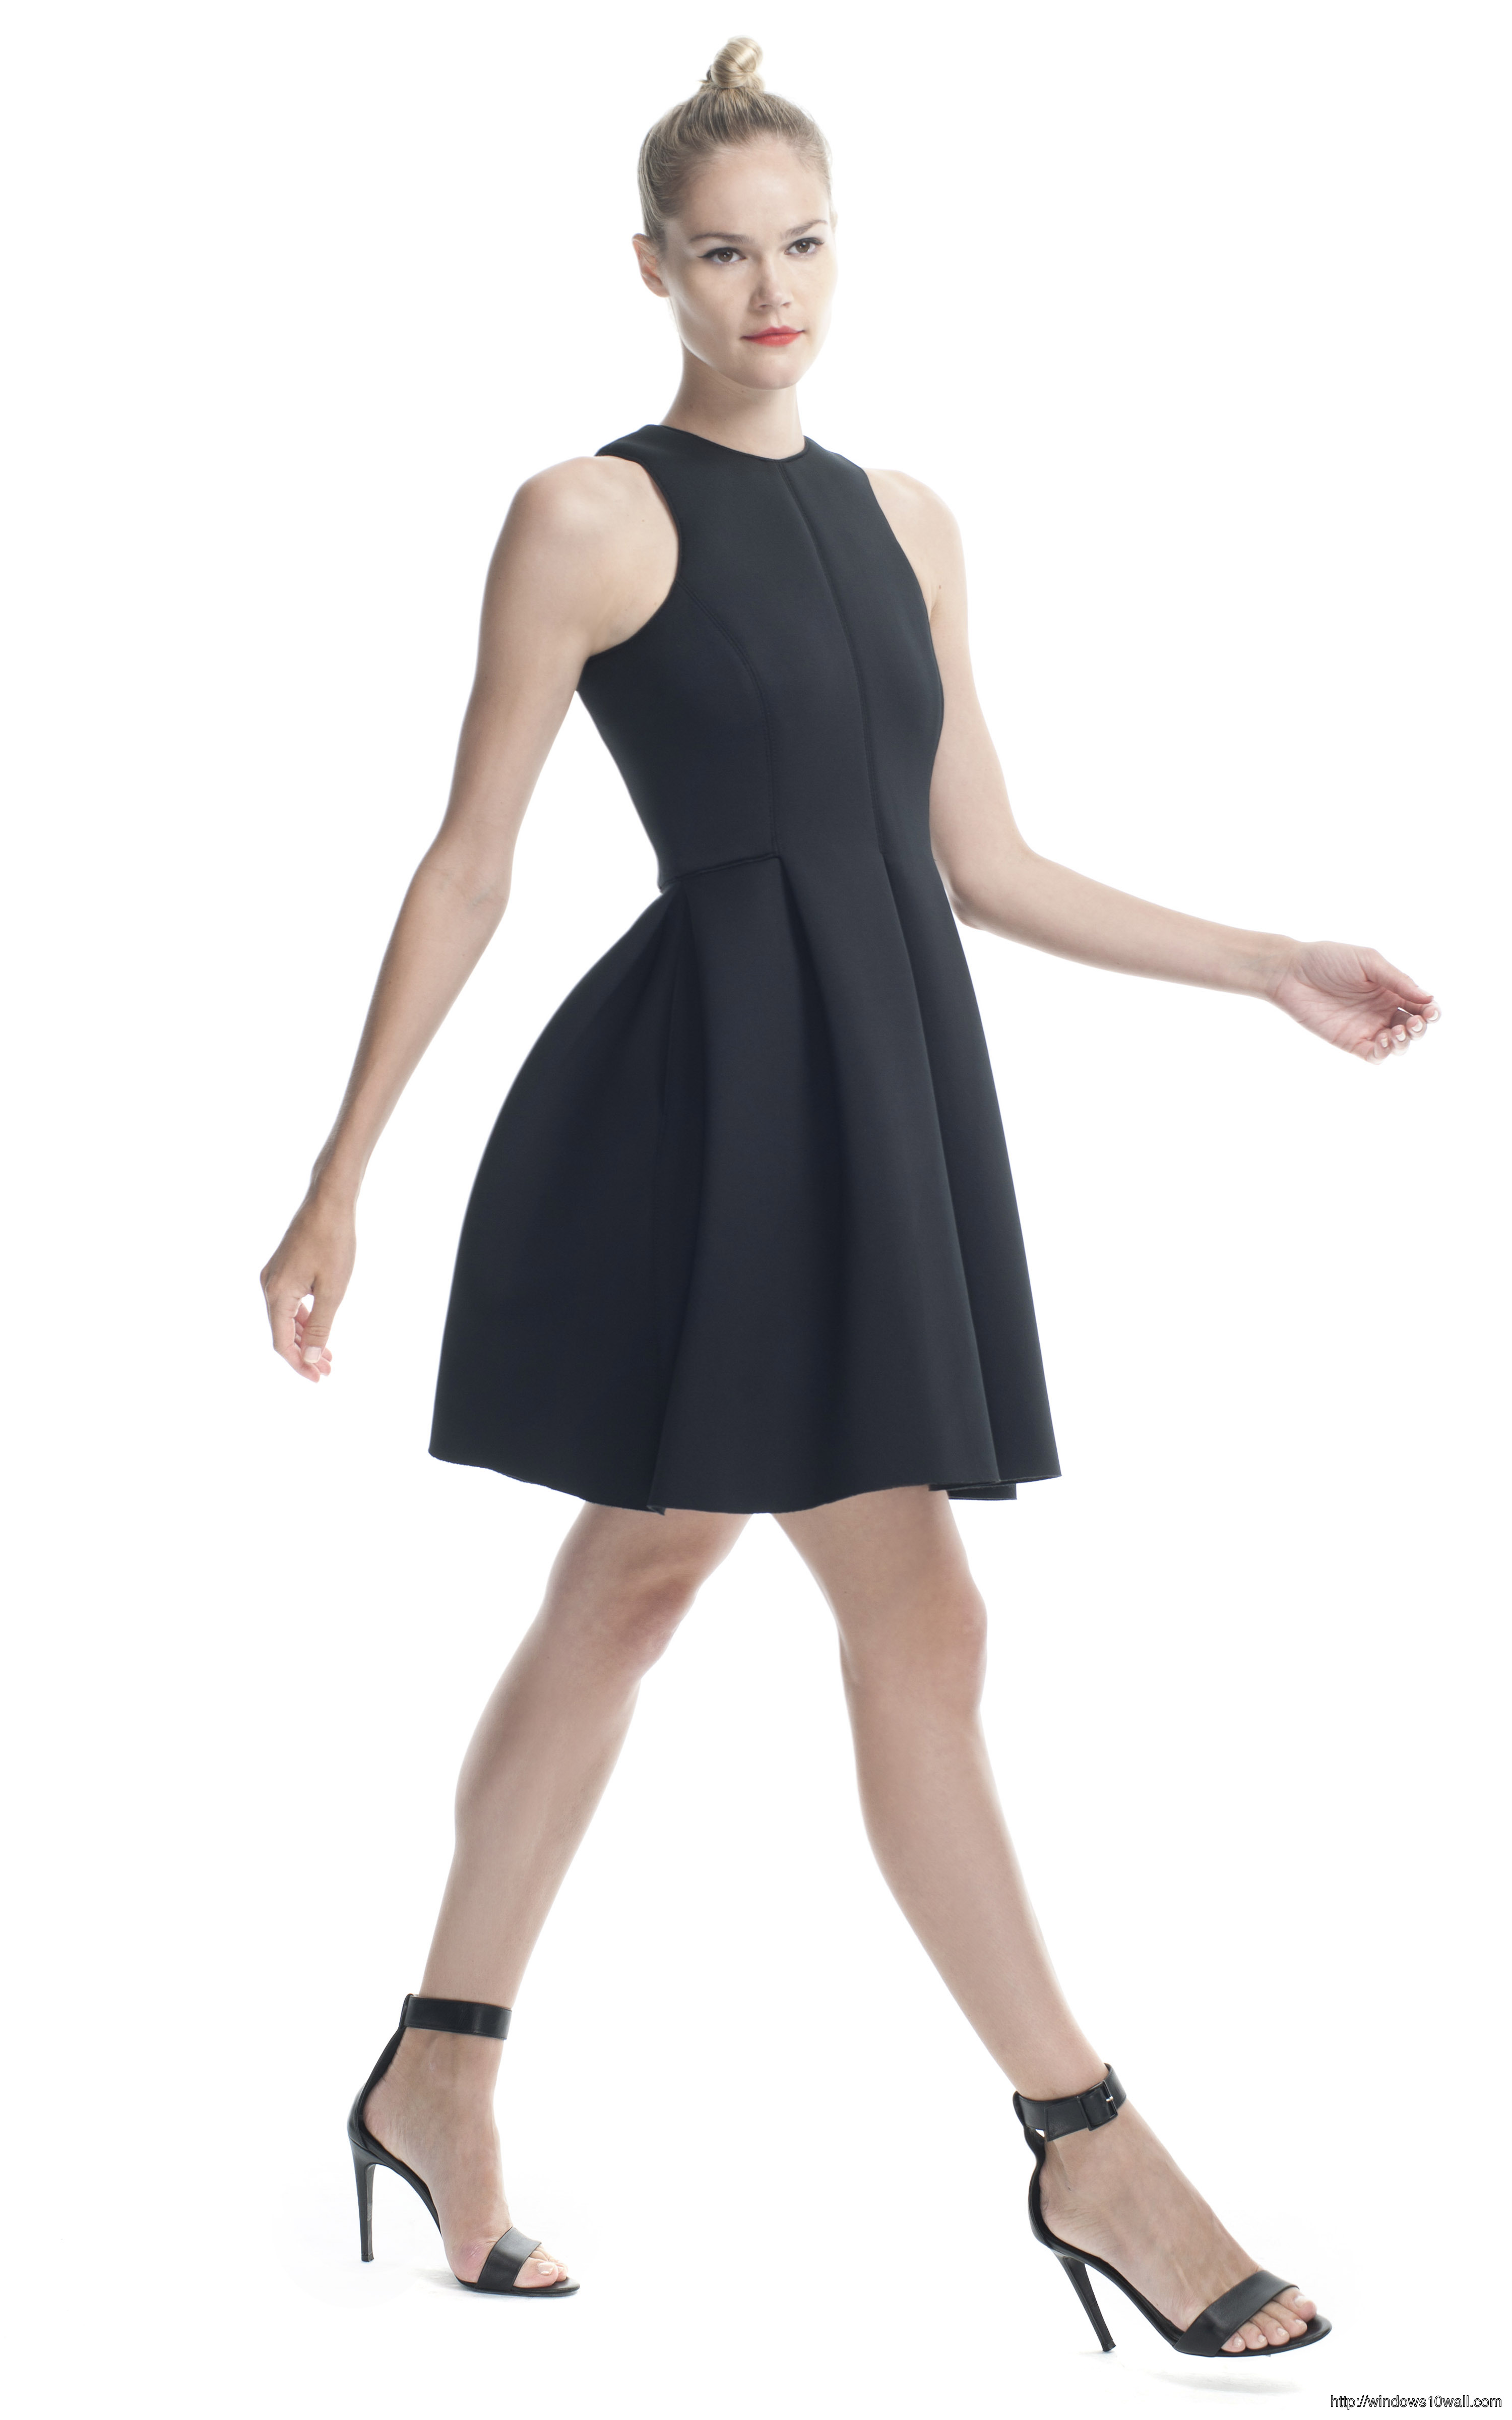 black-sleeveless-dress-in-short-background-wallpaper